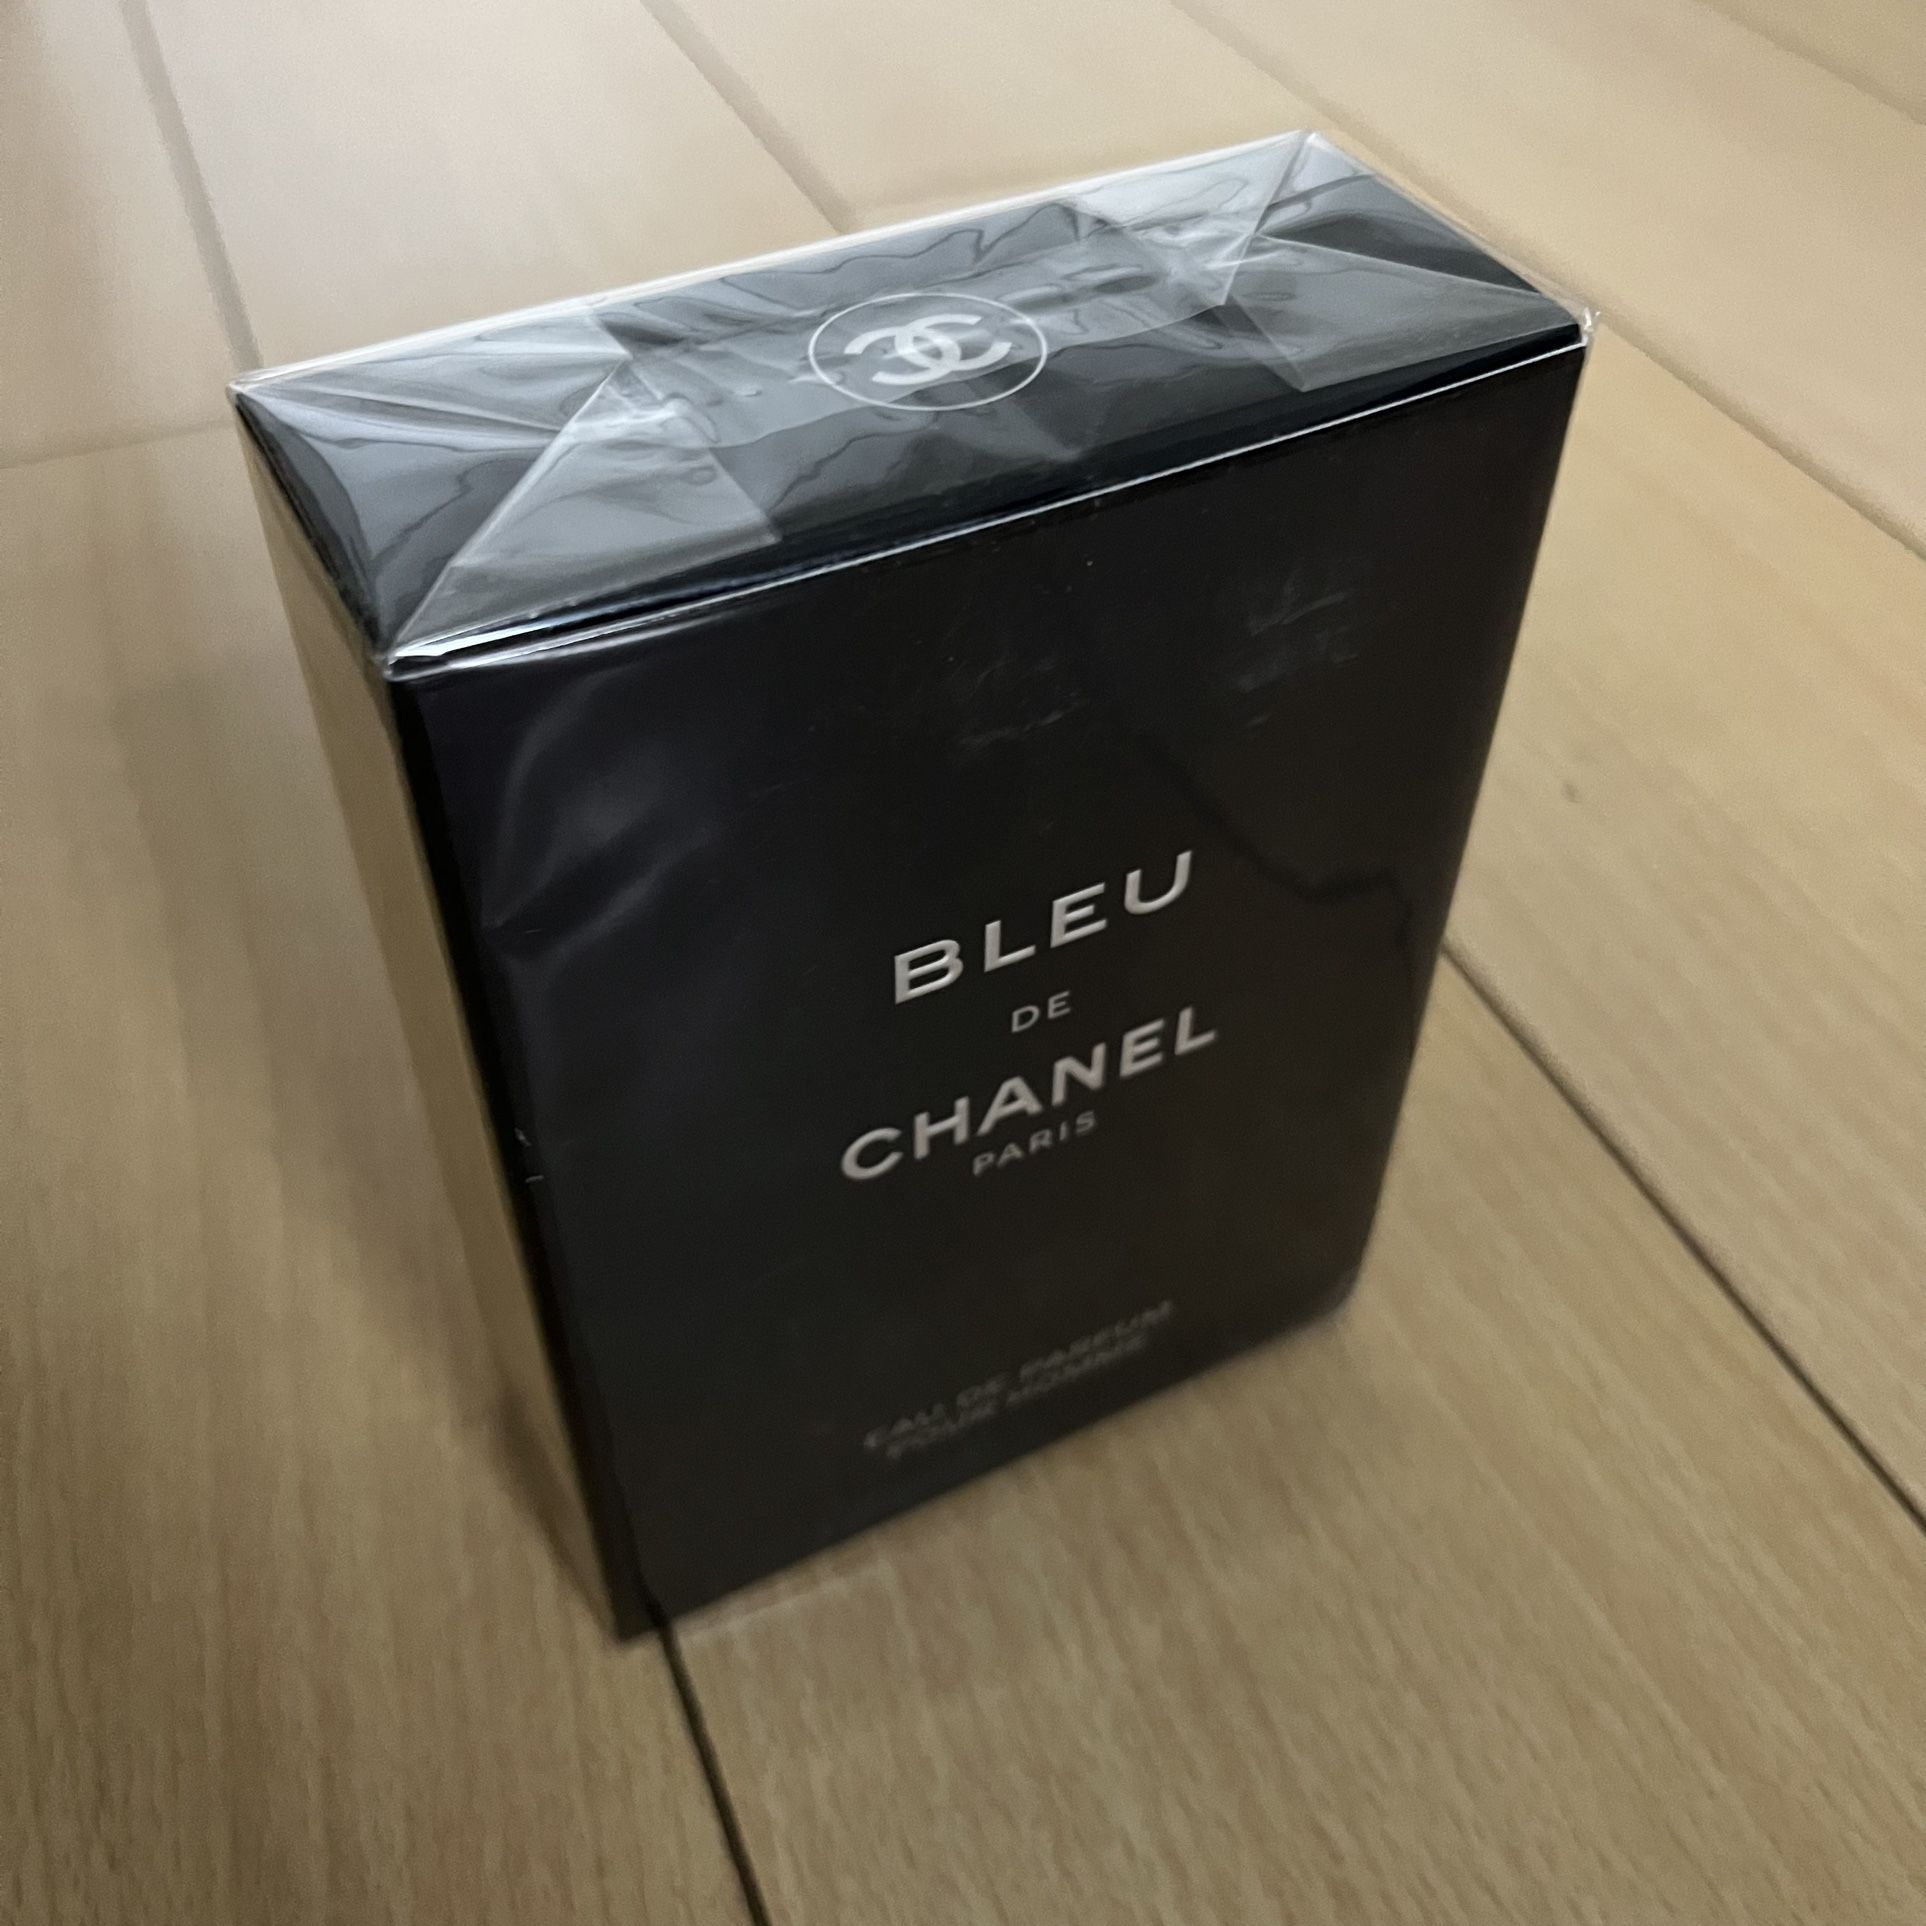 Blue De Chanel Paris Eau De Parfum Men's Fragrance 100 ml, 3.4 FL OZ for  Sale in Los Angeles, CA - OfferUp